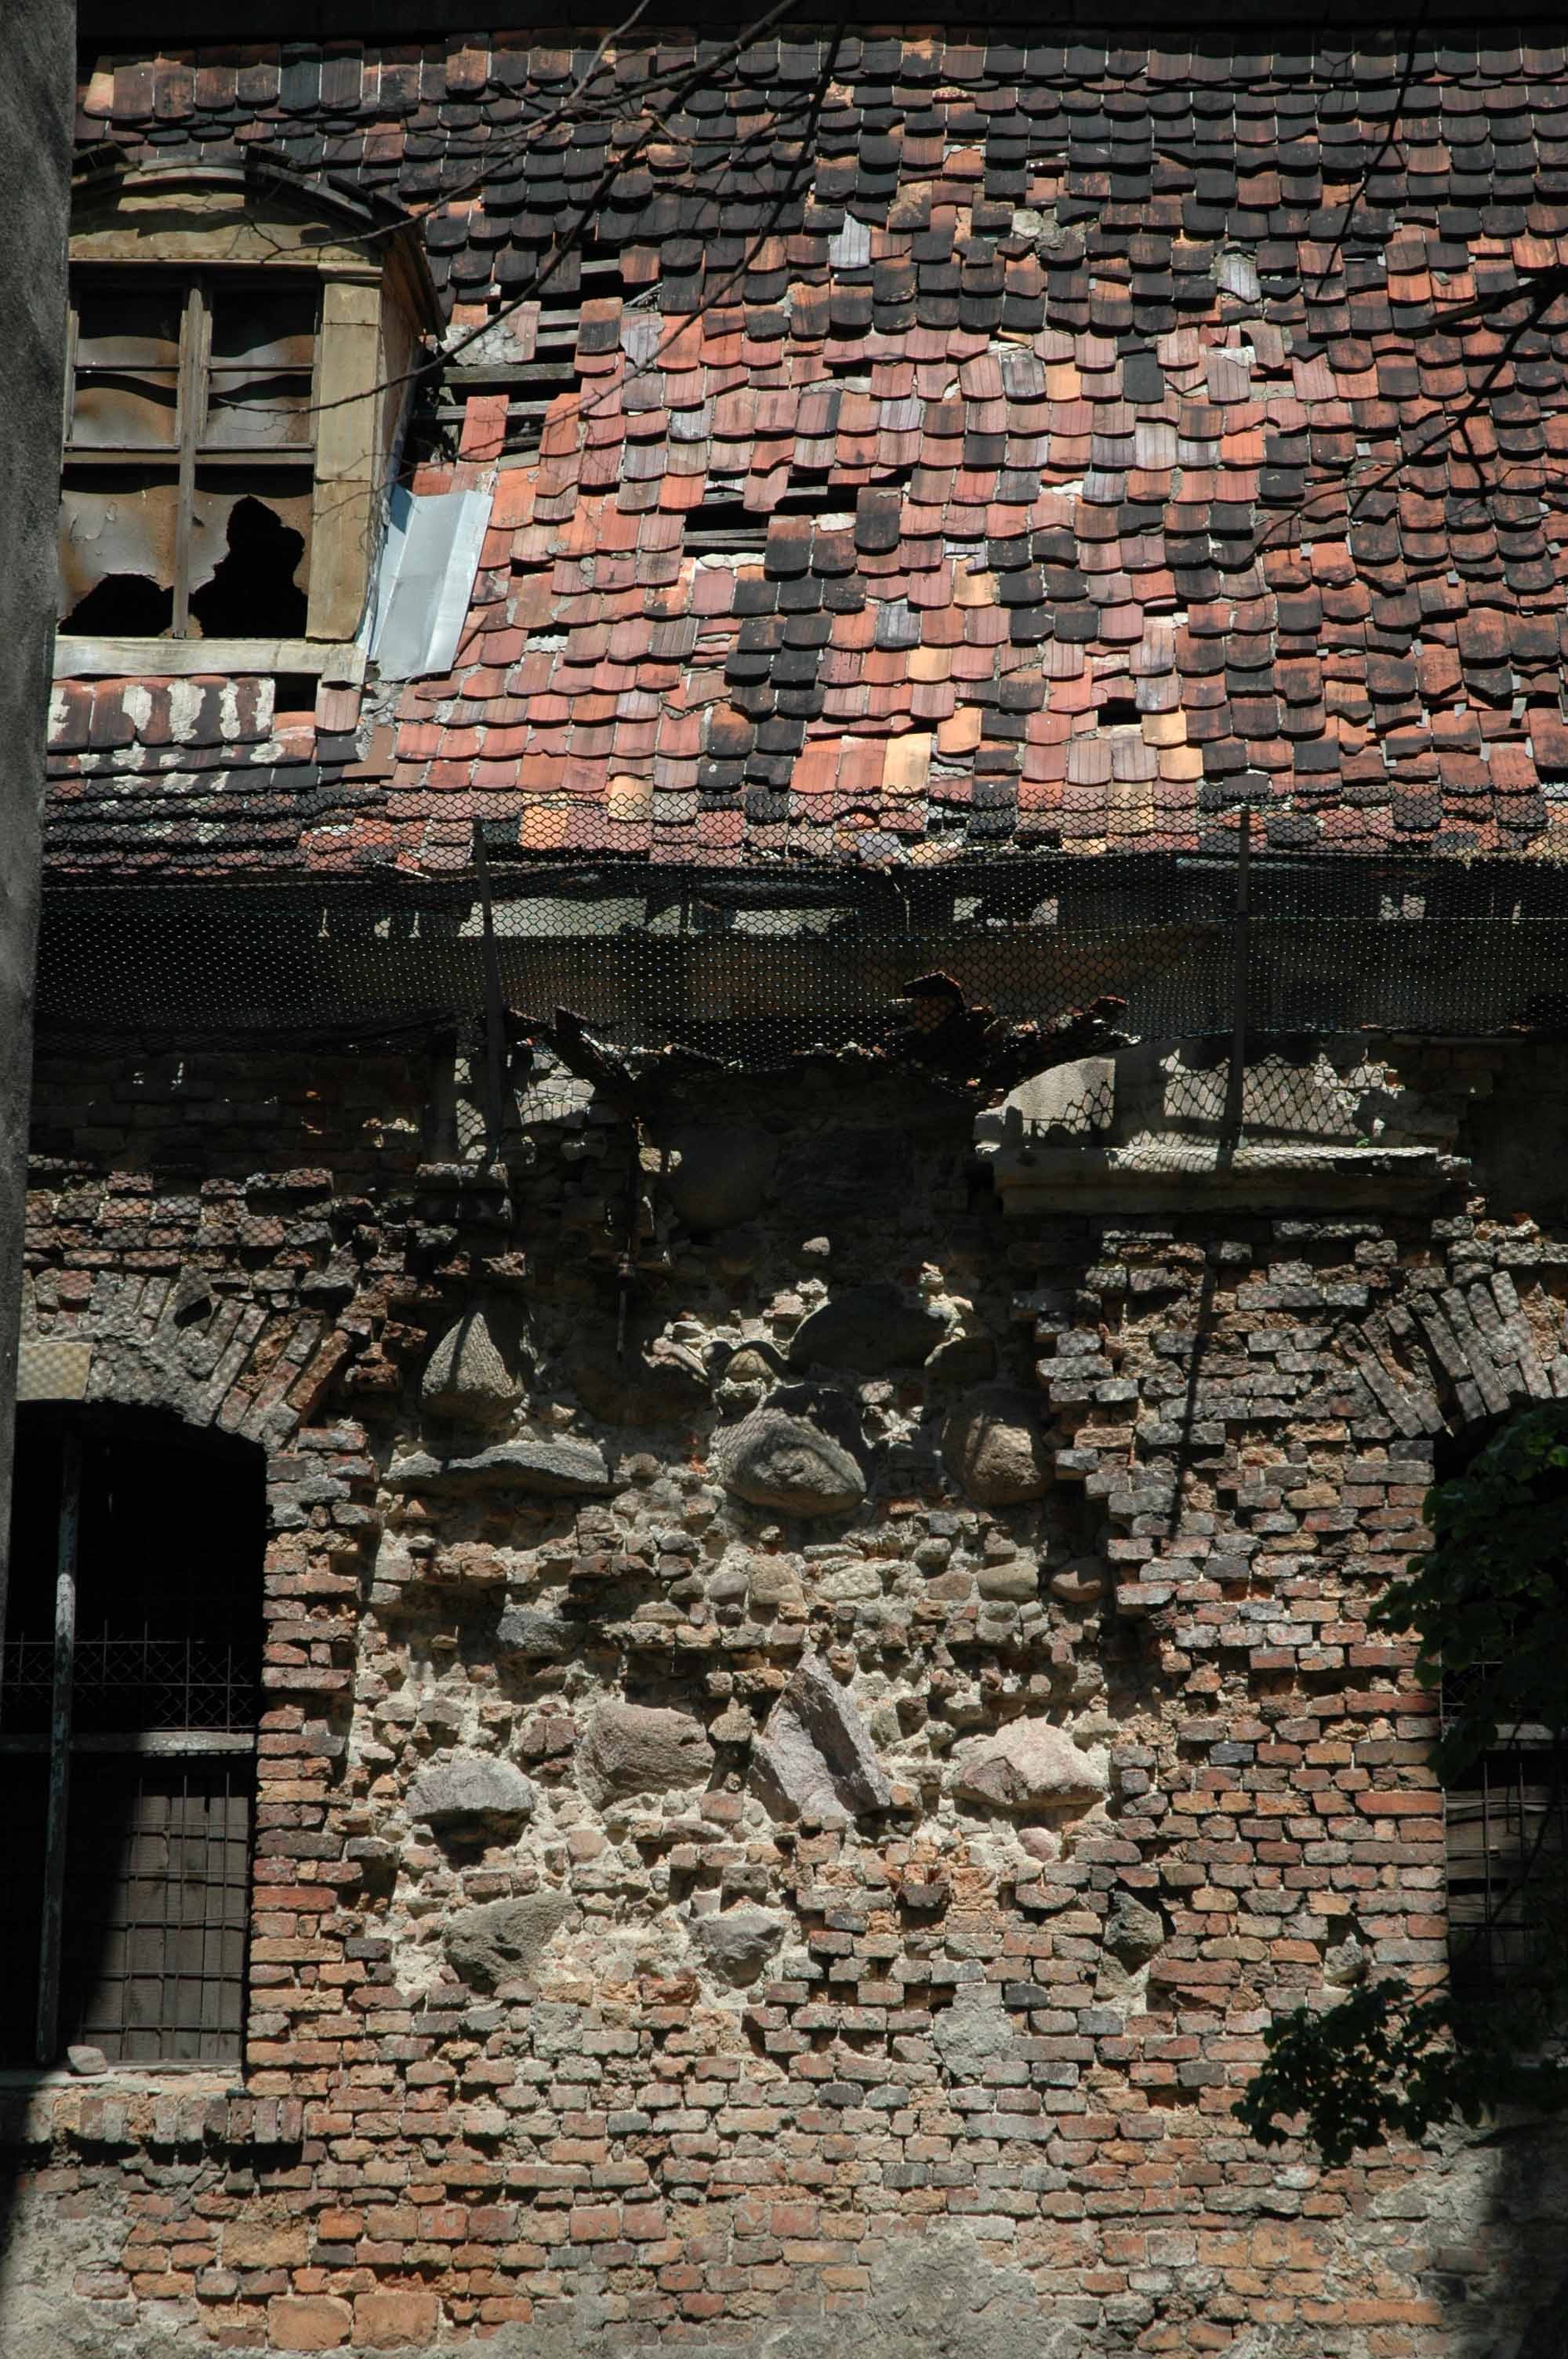 Seminarium duchowne z XVII w. w stanie ruiny. Mury budowli wzniesiono z cegły gotyckiej oraz kamienia.